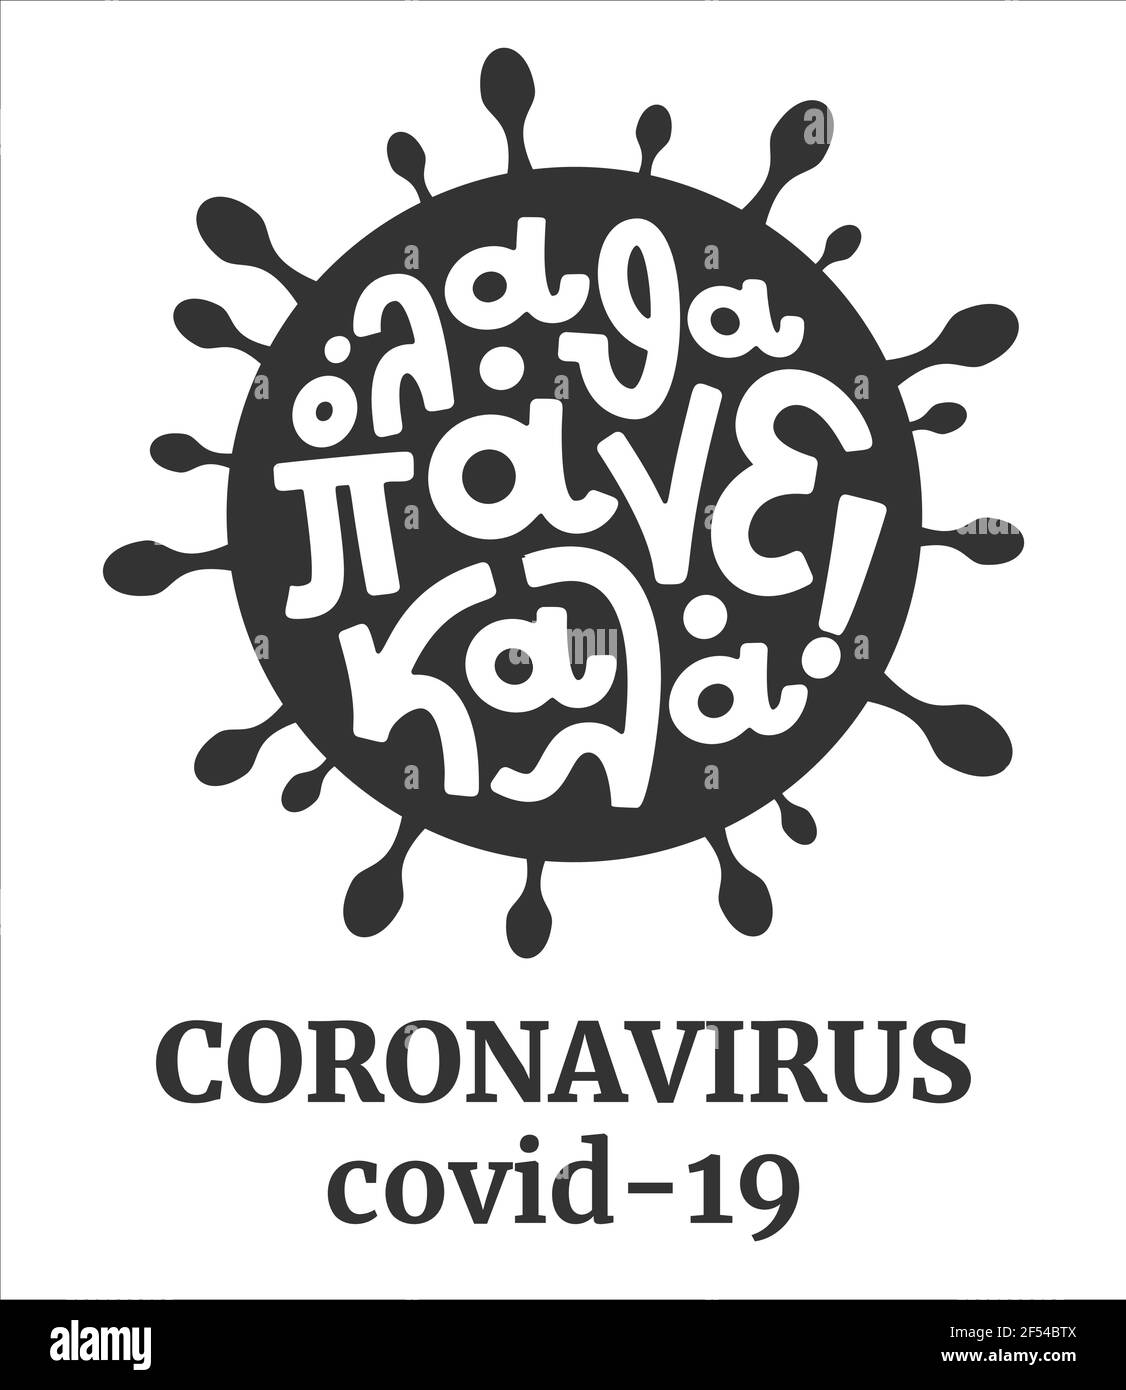 Covid Zeichen mit Zitat in griechischer Sprache, alles wird in Ordnung sein. Coronavirus covid-19. Positives Zitat. Beschriftung Kunst. Vektor-Illustration. Stock Vektor